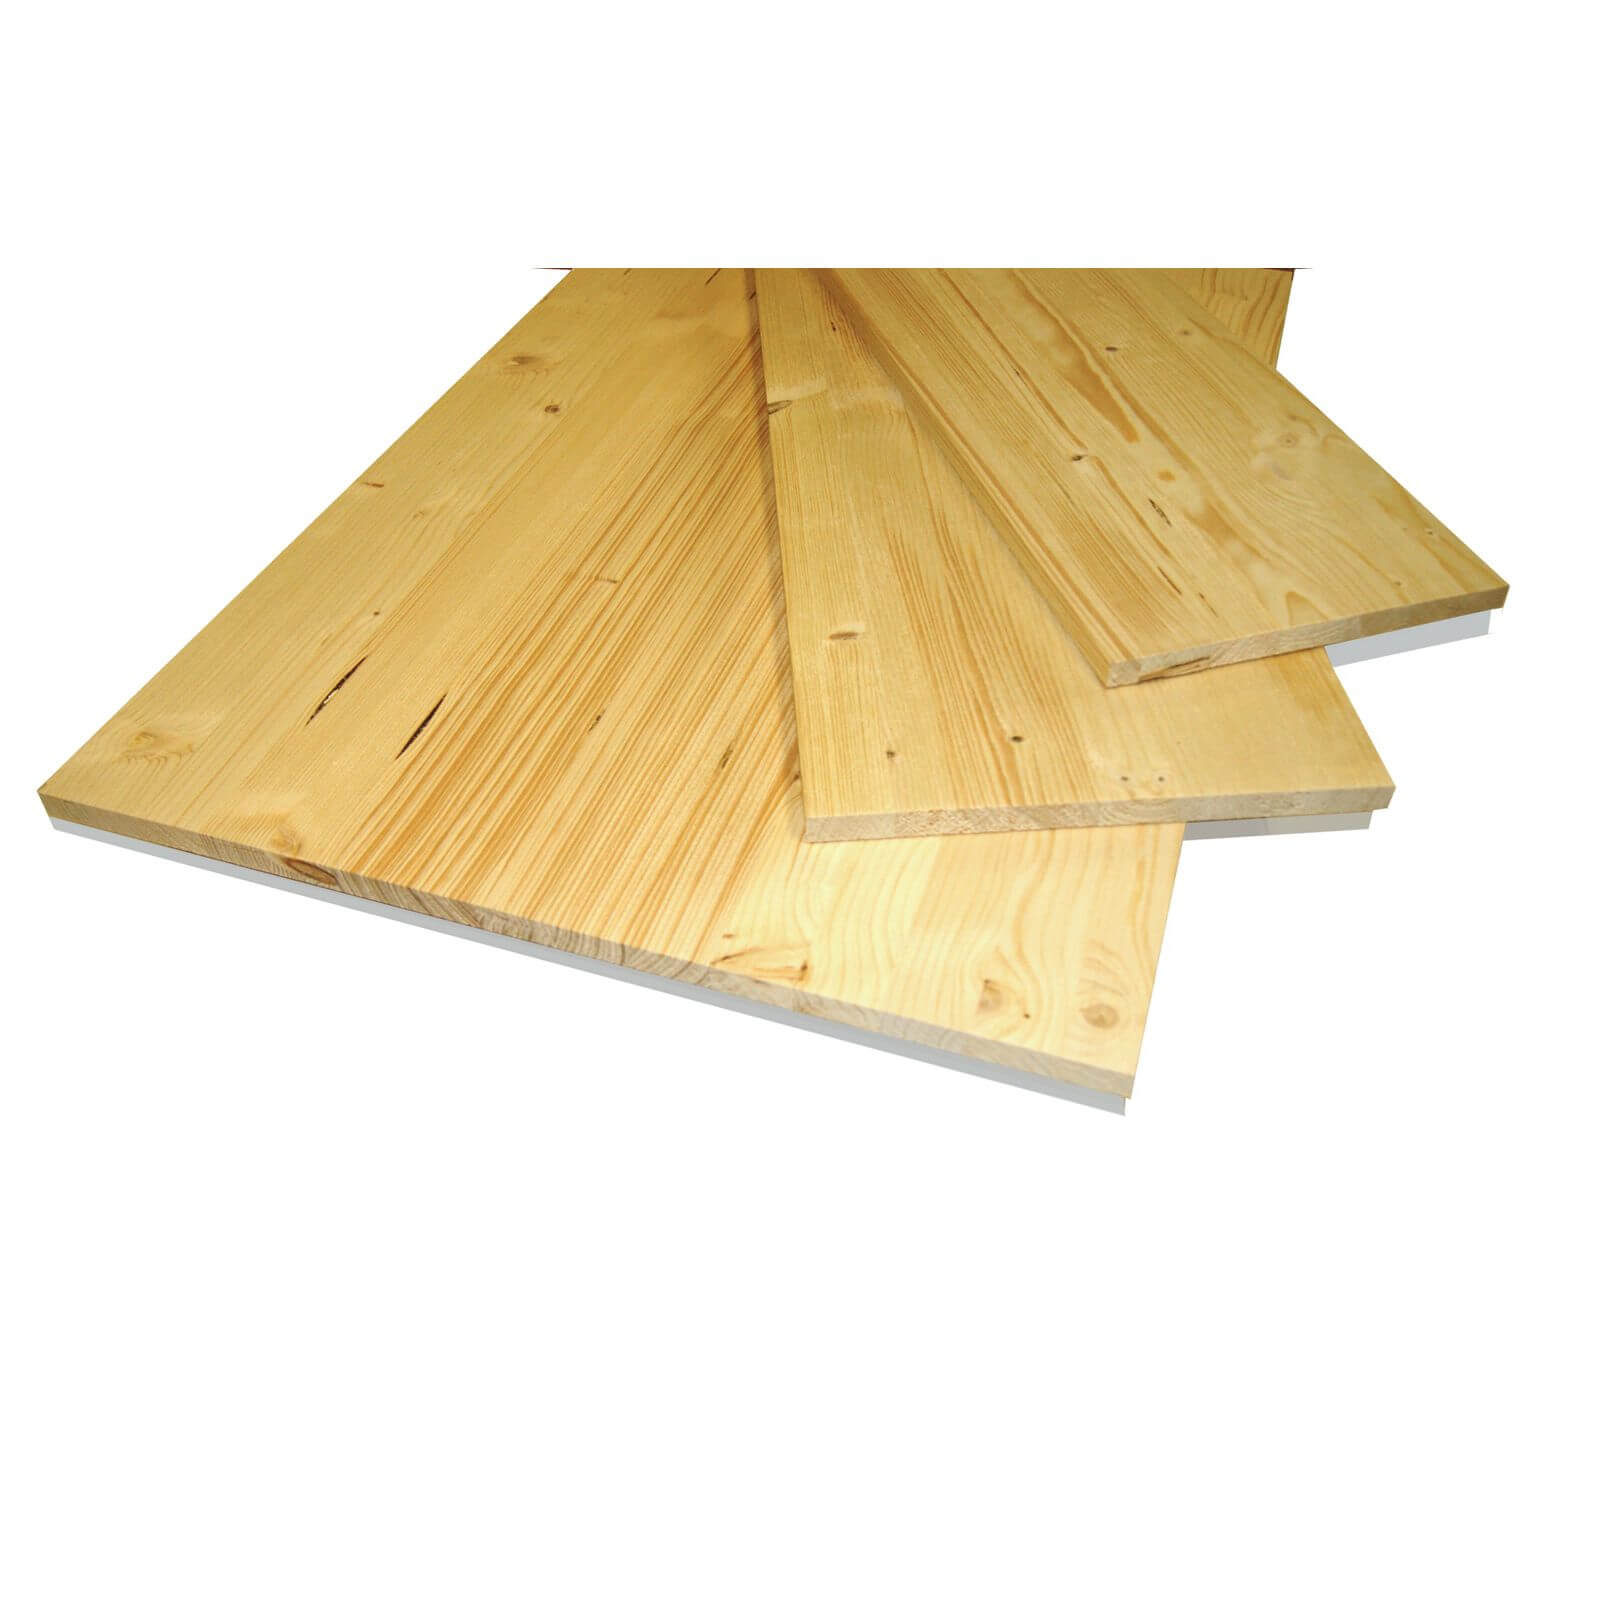 Metsa Wood Solid Spruce Wooden Panel Board 1.75m (18 x 400 x 1750mm)